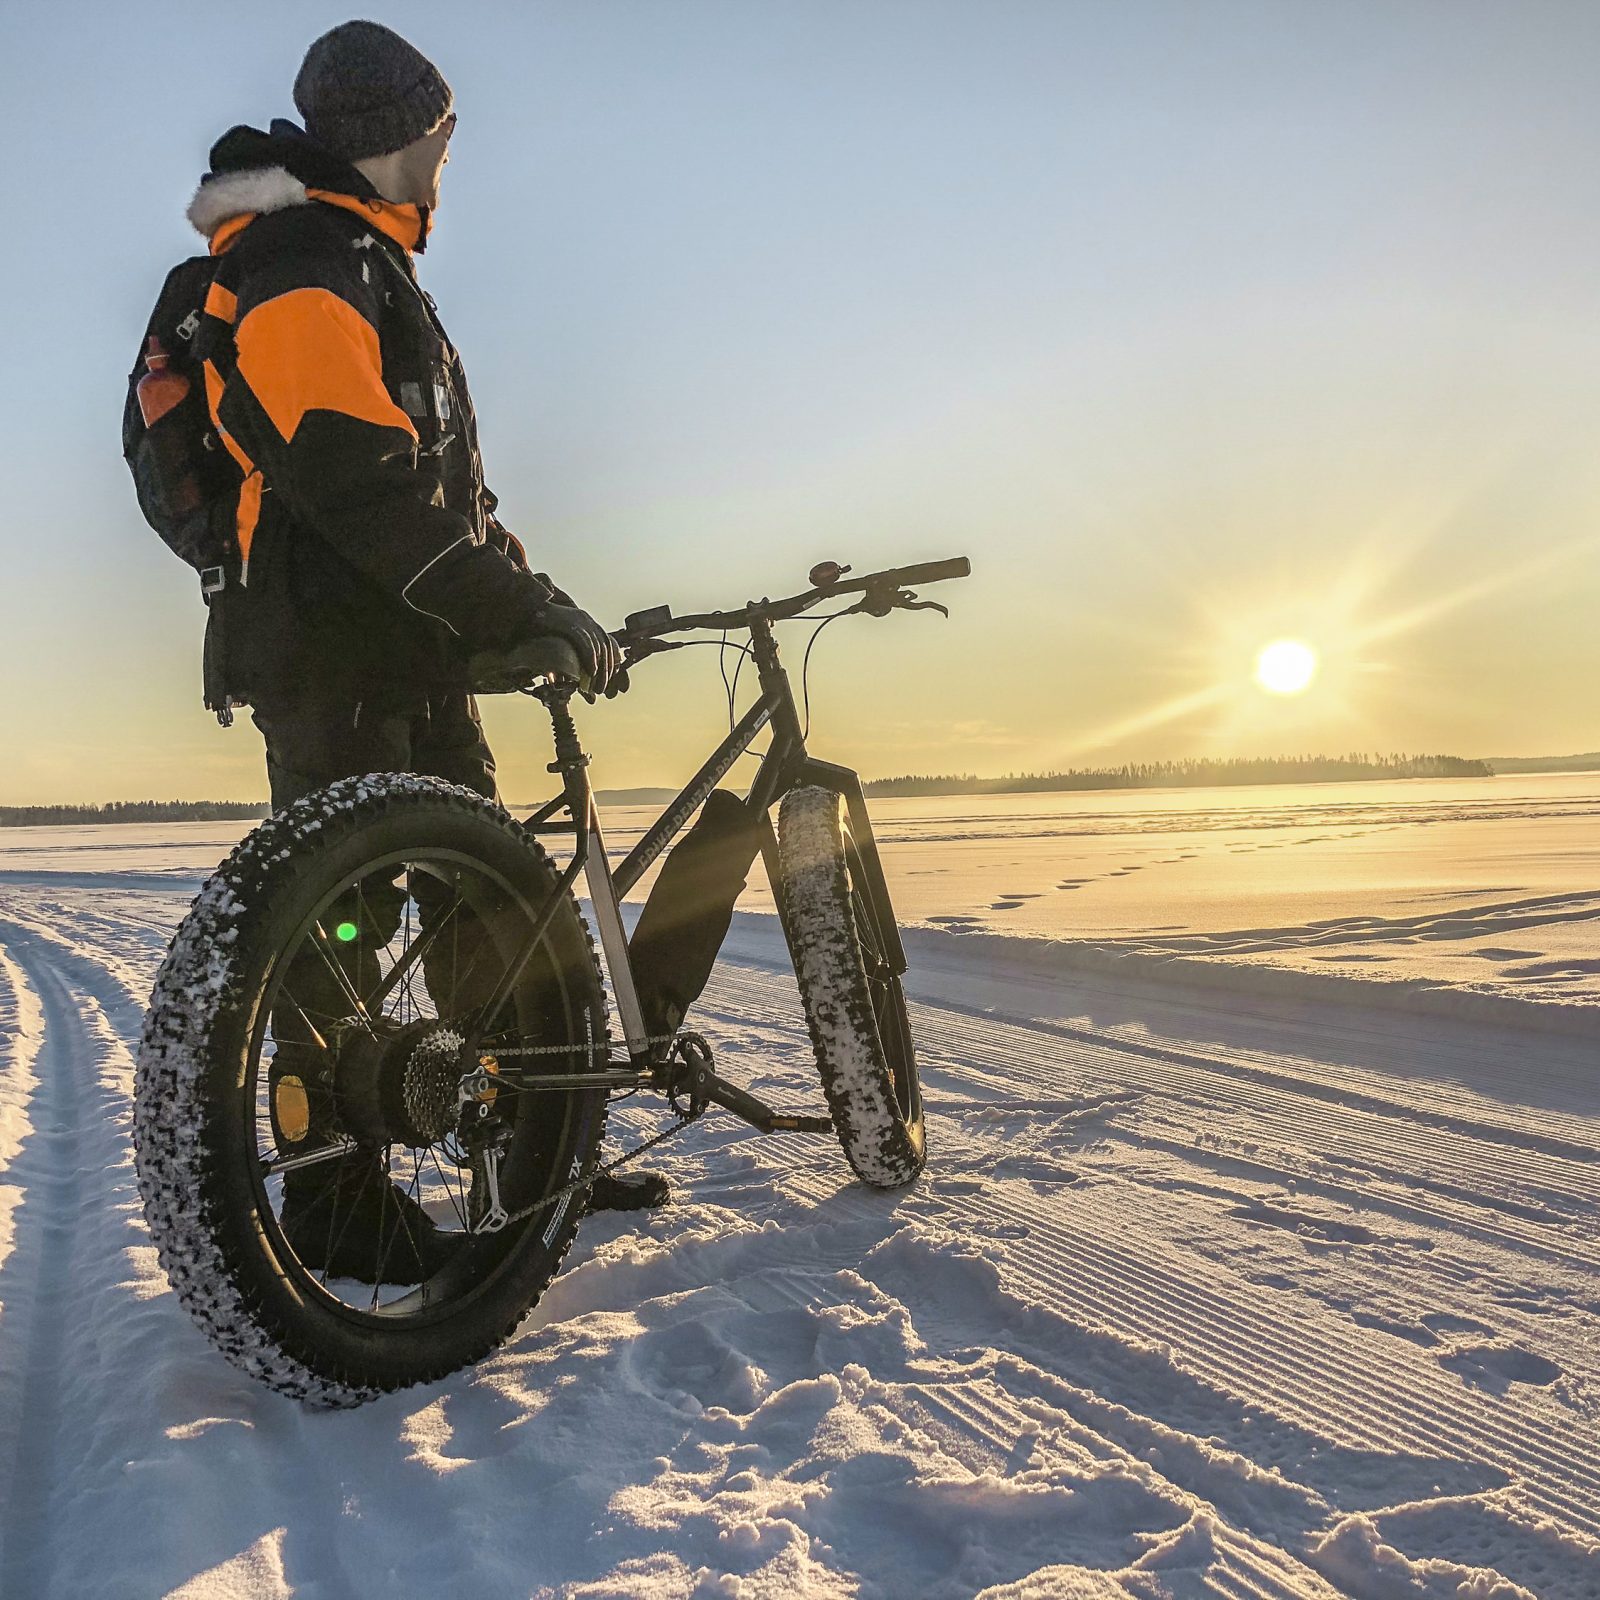 Bomba / Välinevuokraus, e-bike, sähkökäyttöinen pyörä, talvi-aktiviteetit, Villi Pohjola / Wild Nordic Finland @wildnordicfinland